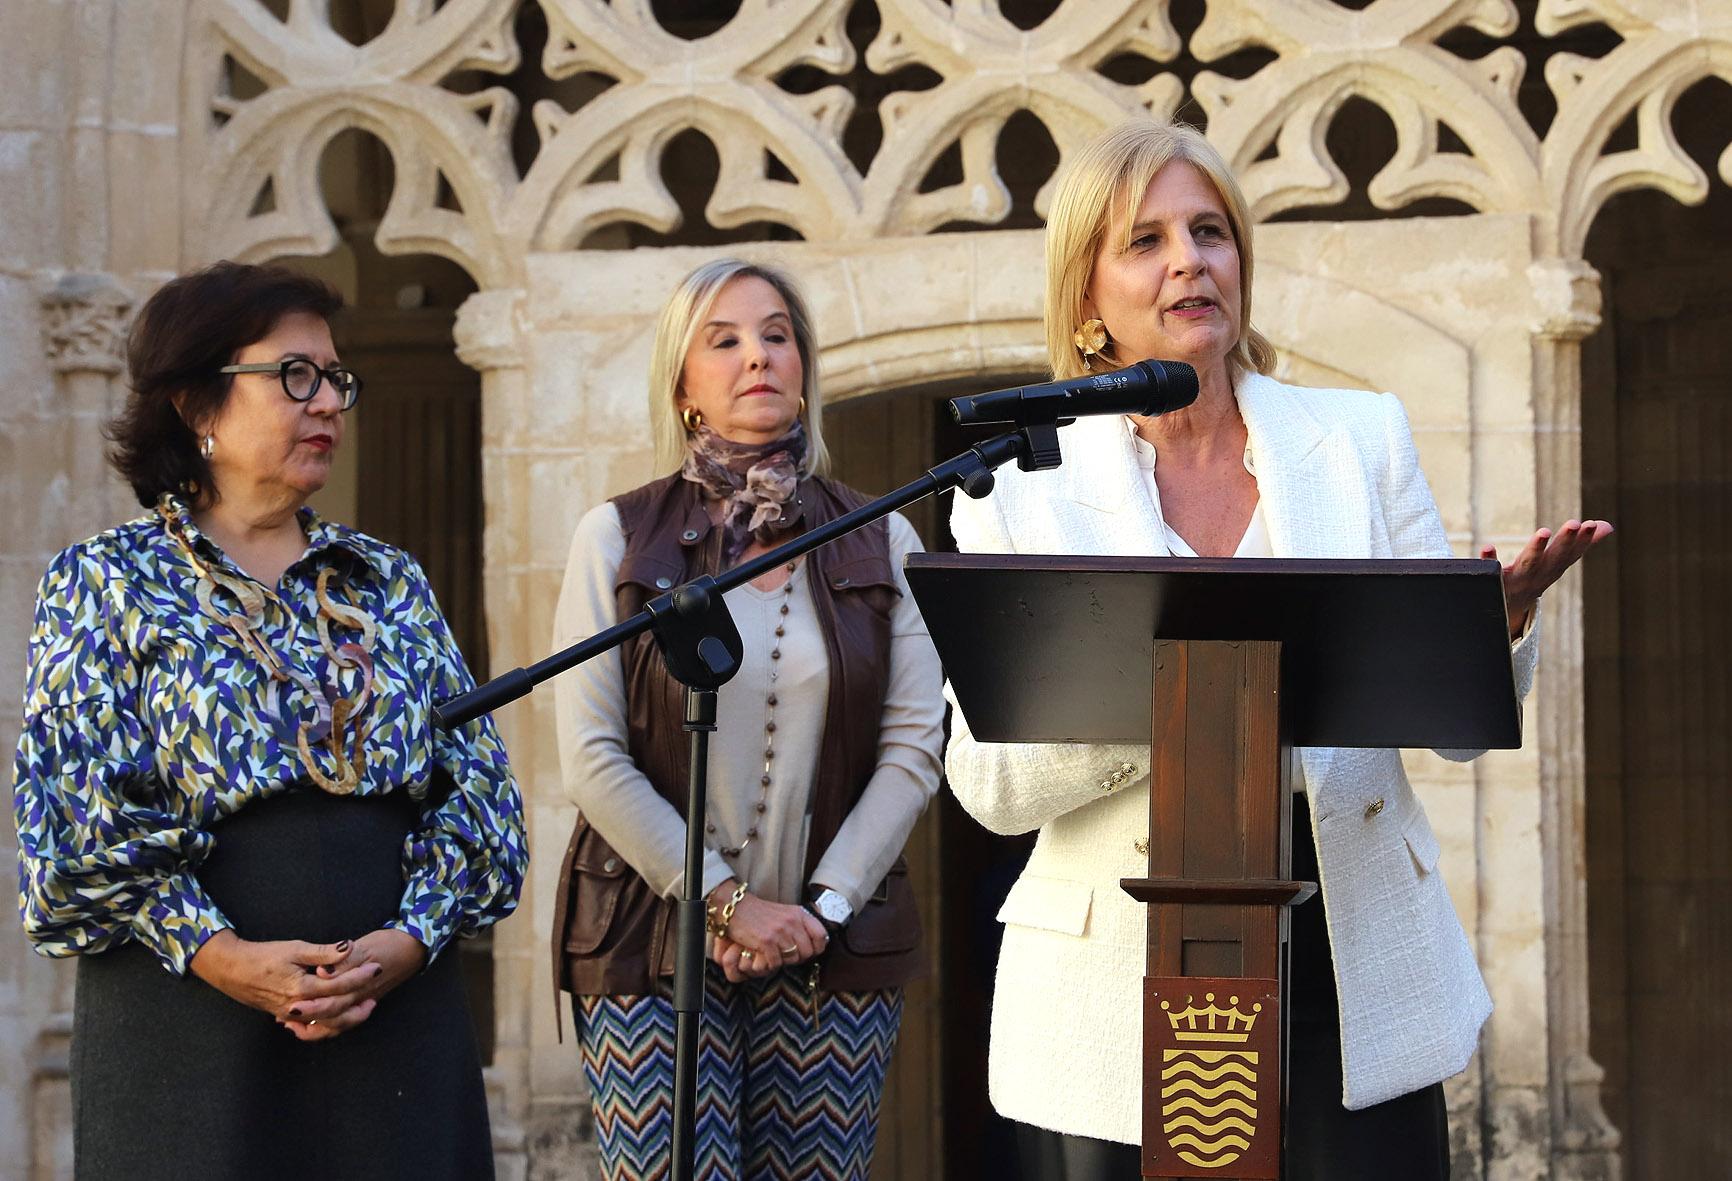 La alcaldesa de Jerez agradece a los fiscales españoles "su firme trabajo en defensa de la justicia y el Estado de Derecho"